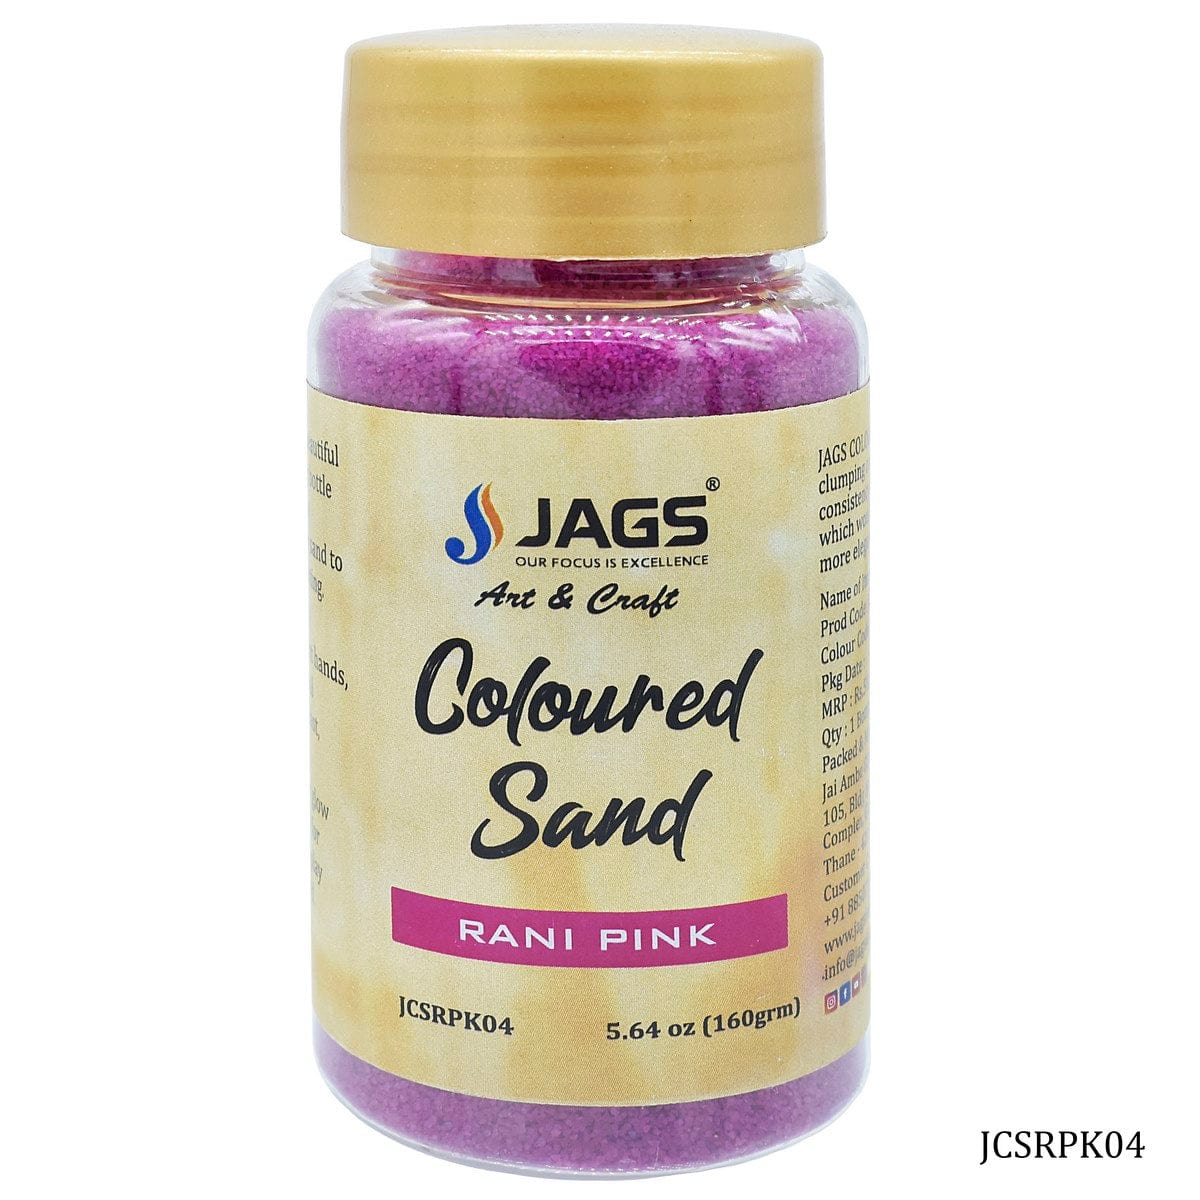 jags-mumbai Sand Jags Coloured Sand 160Gms - Rani Pink No. 4 JCSRPK04